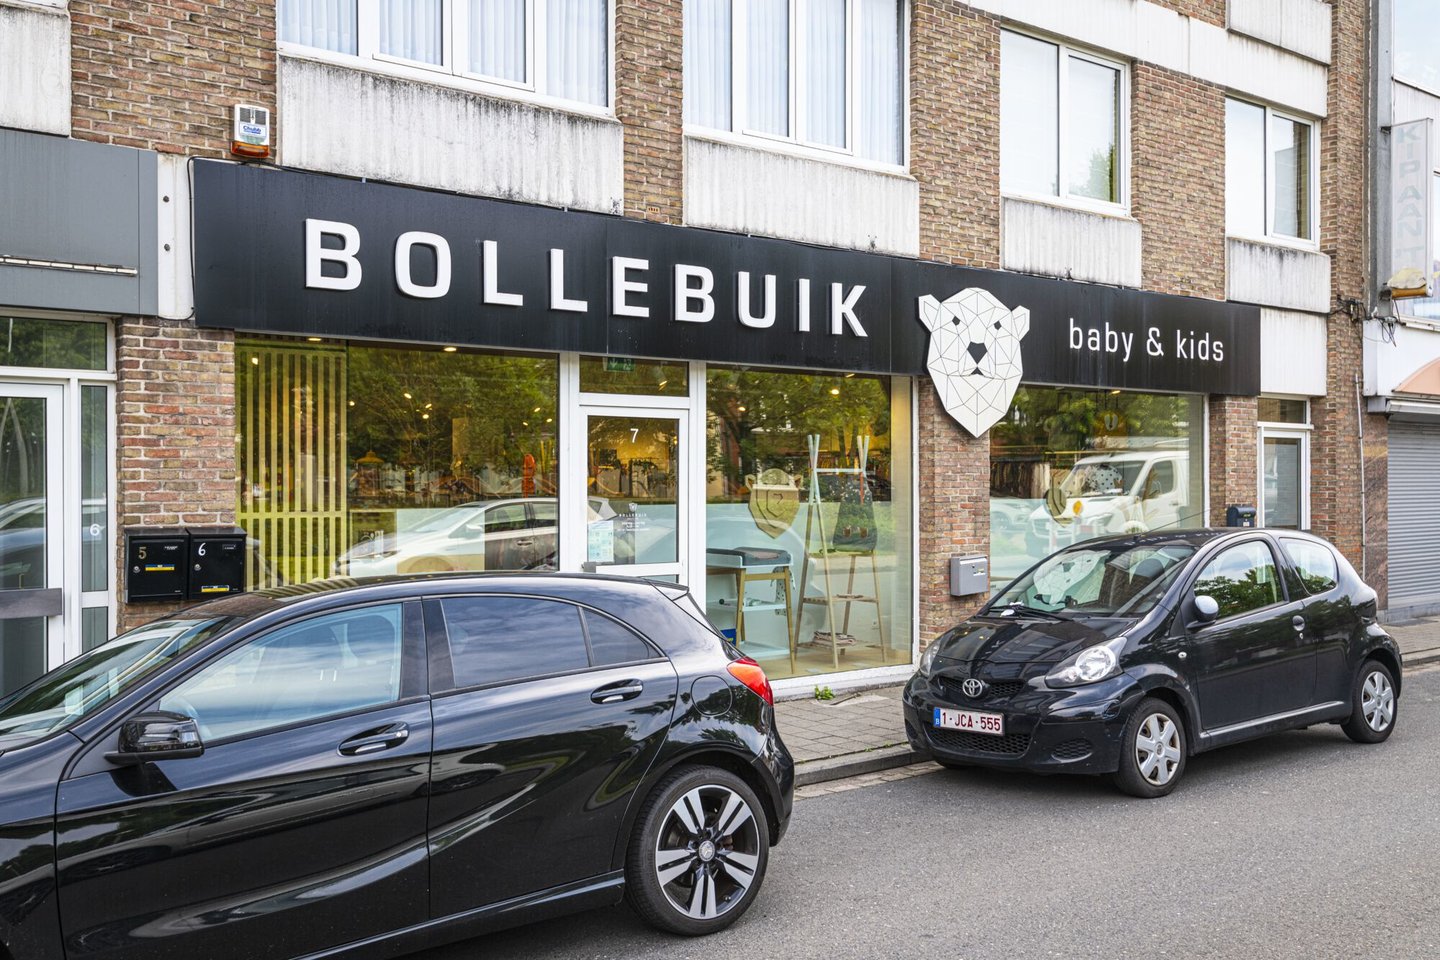 Etalage van kledingwinkel Bollebuik Baby's & Kids in Mariakerke